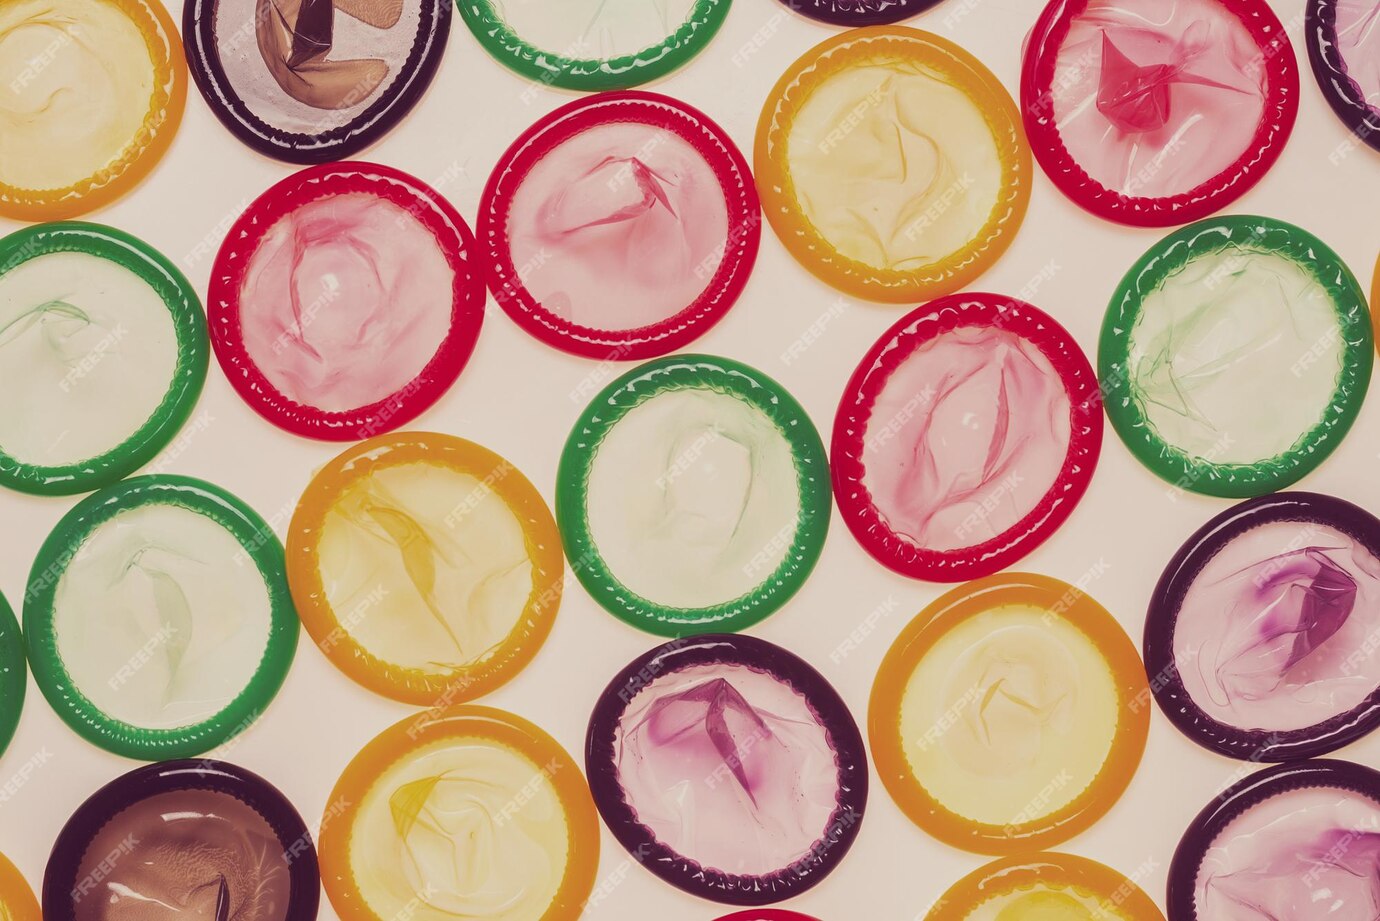 vybalené kondomy